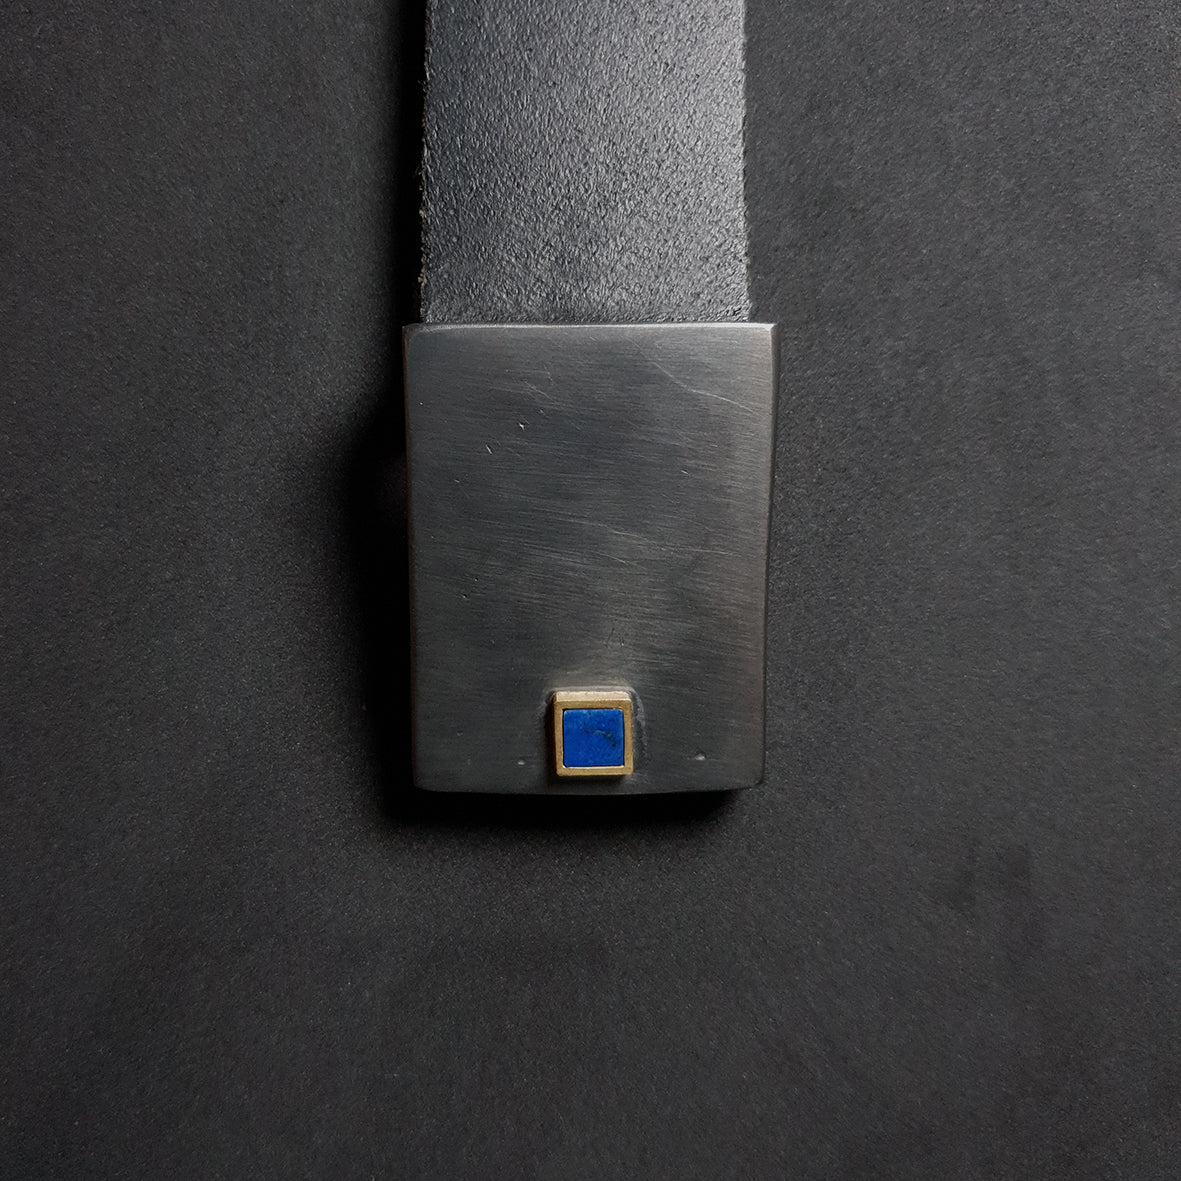 Cinturó de la col·lecció Squares. Lapislàtzuli